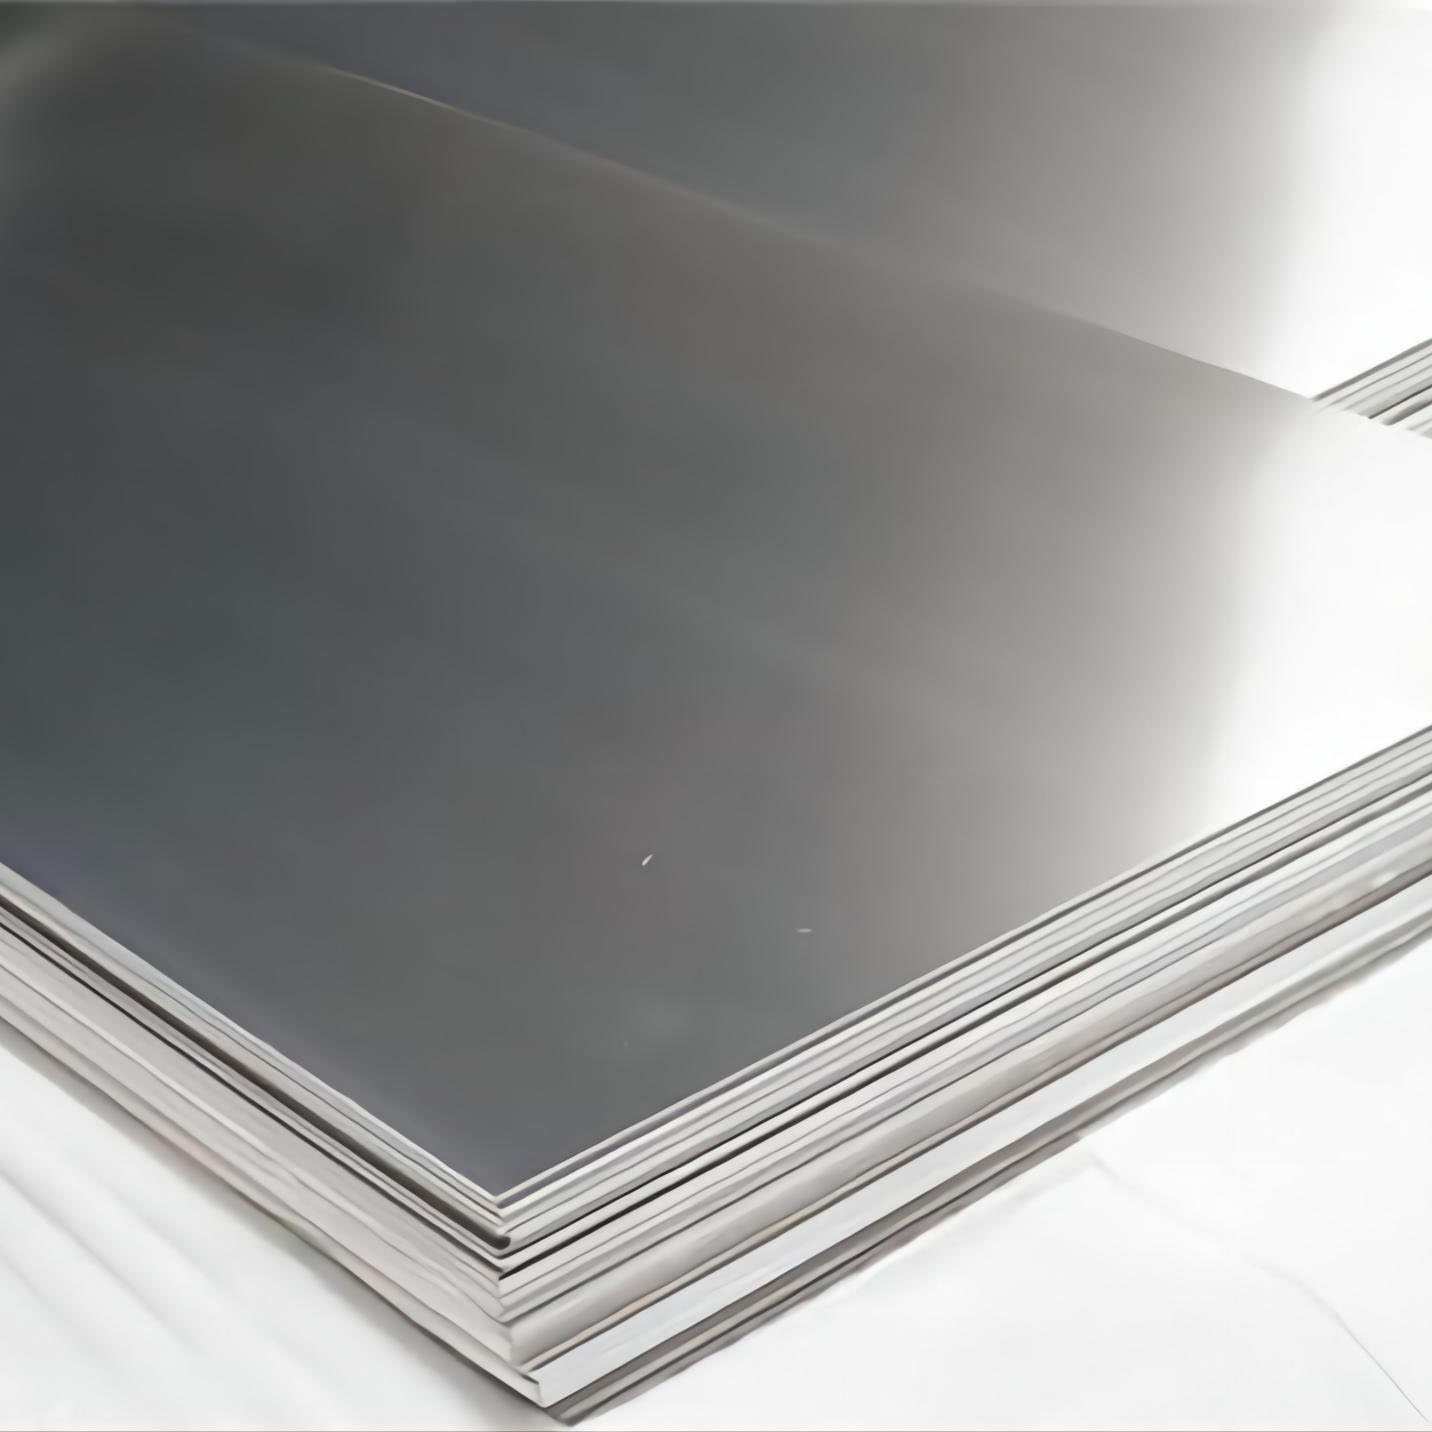 Fournisseur de fabrication en Chine Plaque en aluminium 1100 Image en vedette